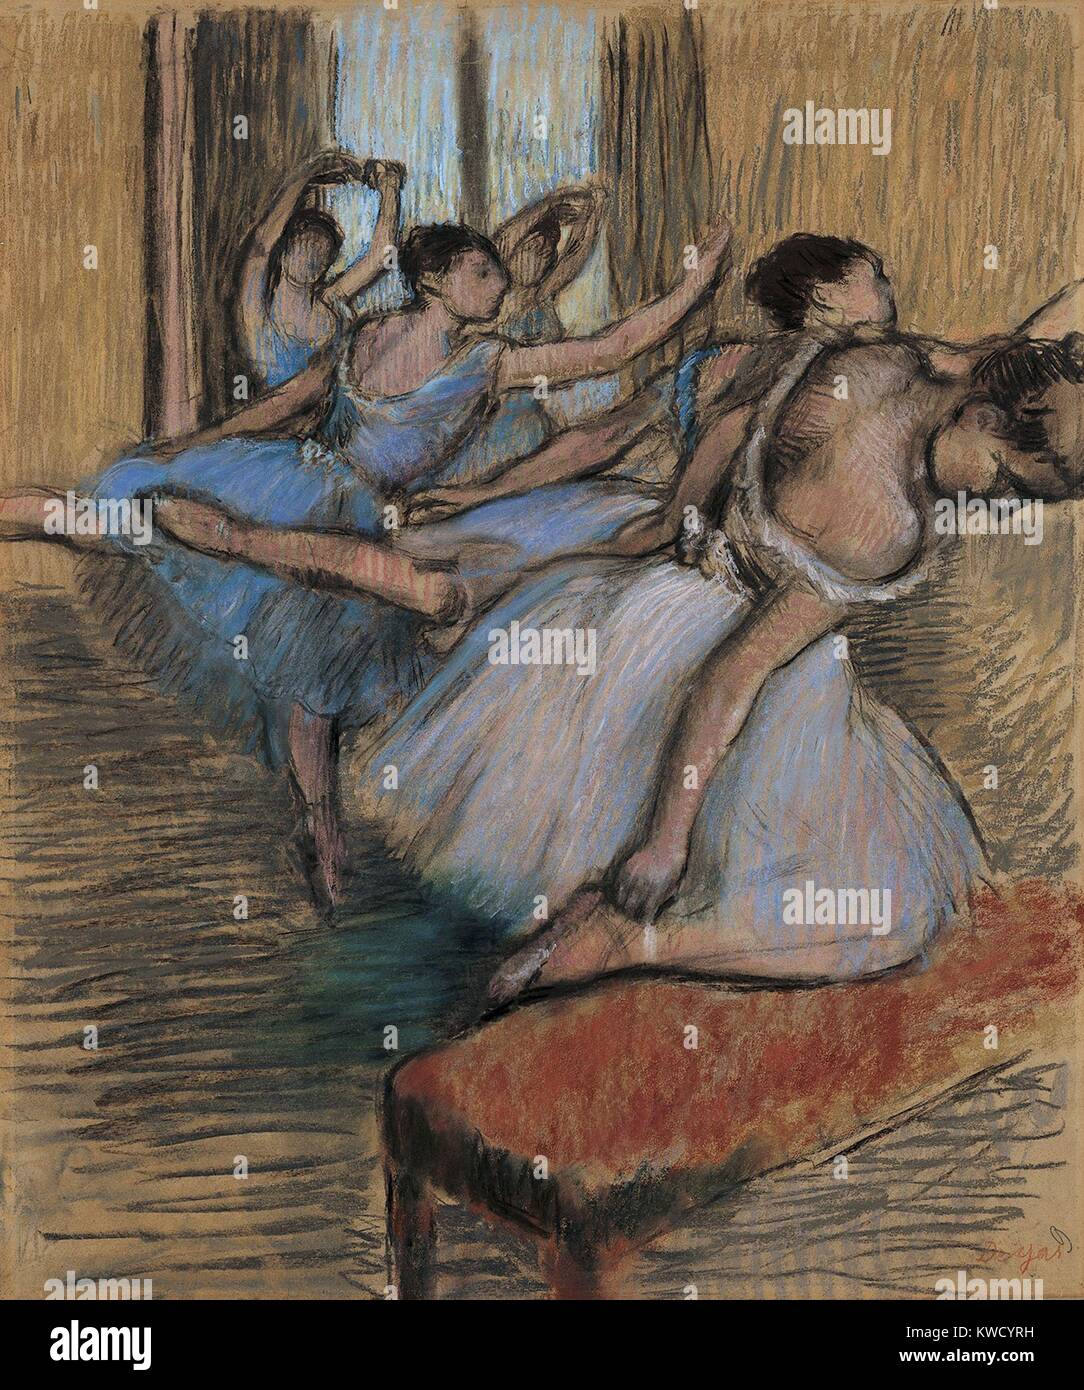 I ballerini, di Edgar Degas, 1900, impressionista francese disegno, pastello e carboncino su carta. Degas detto commerciante di arte Ambroise Vollard, per me la danza è un pretesto per la verniciatura piuttosto costumi e movimento di rendering (BSLOC_2017_3_111) Foto Stock